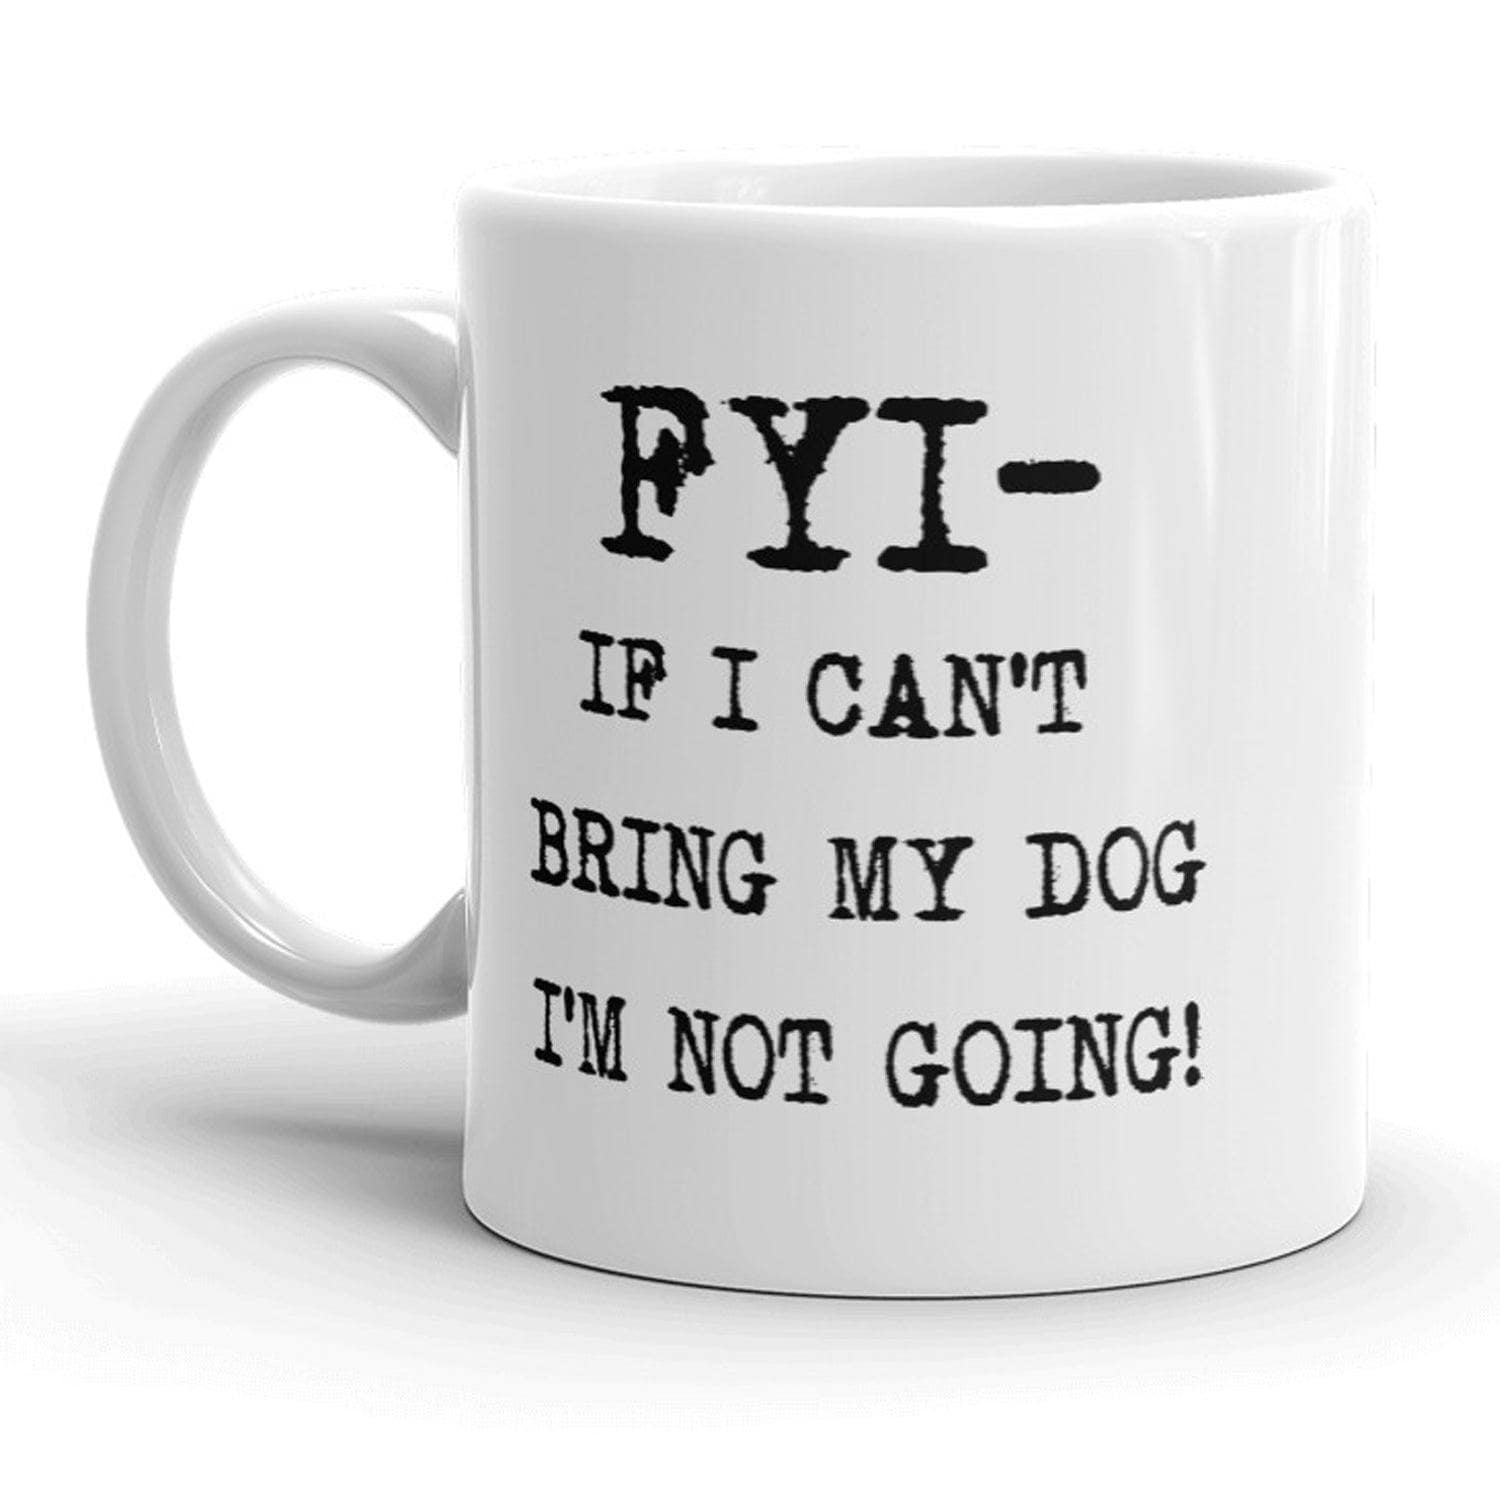 If I Cant Bring My Dog I'm Not Going Mug  -  Crazy Dog T-Shirts